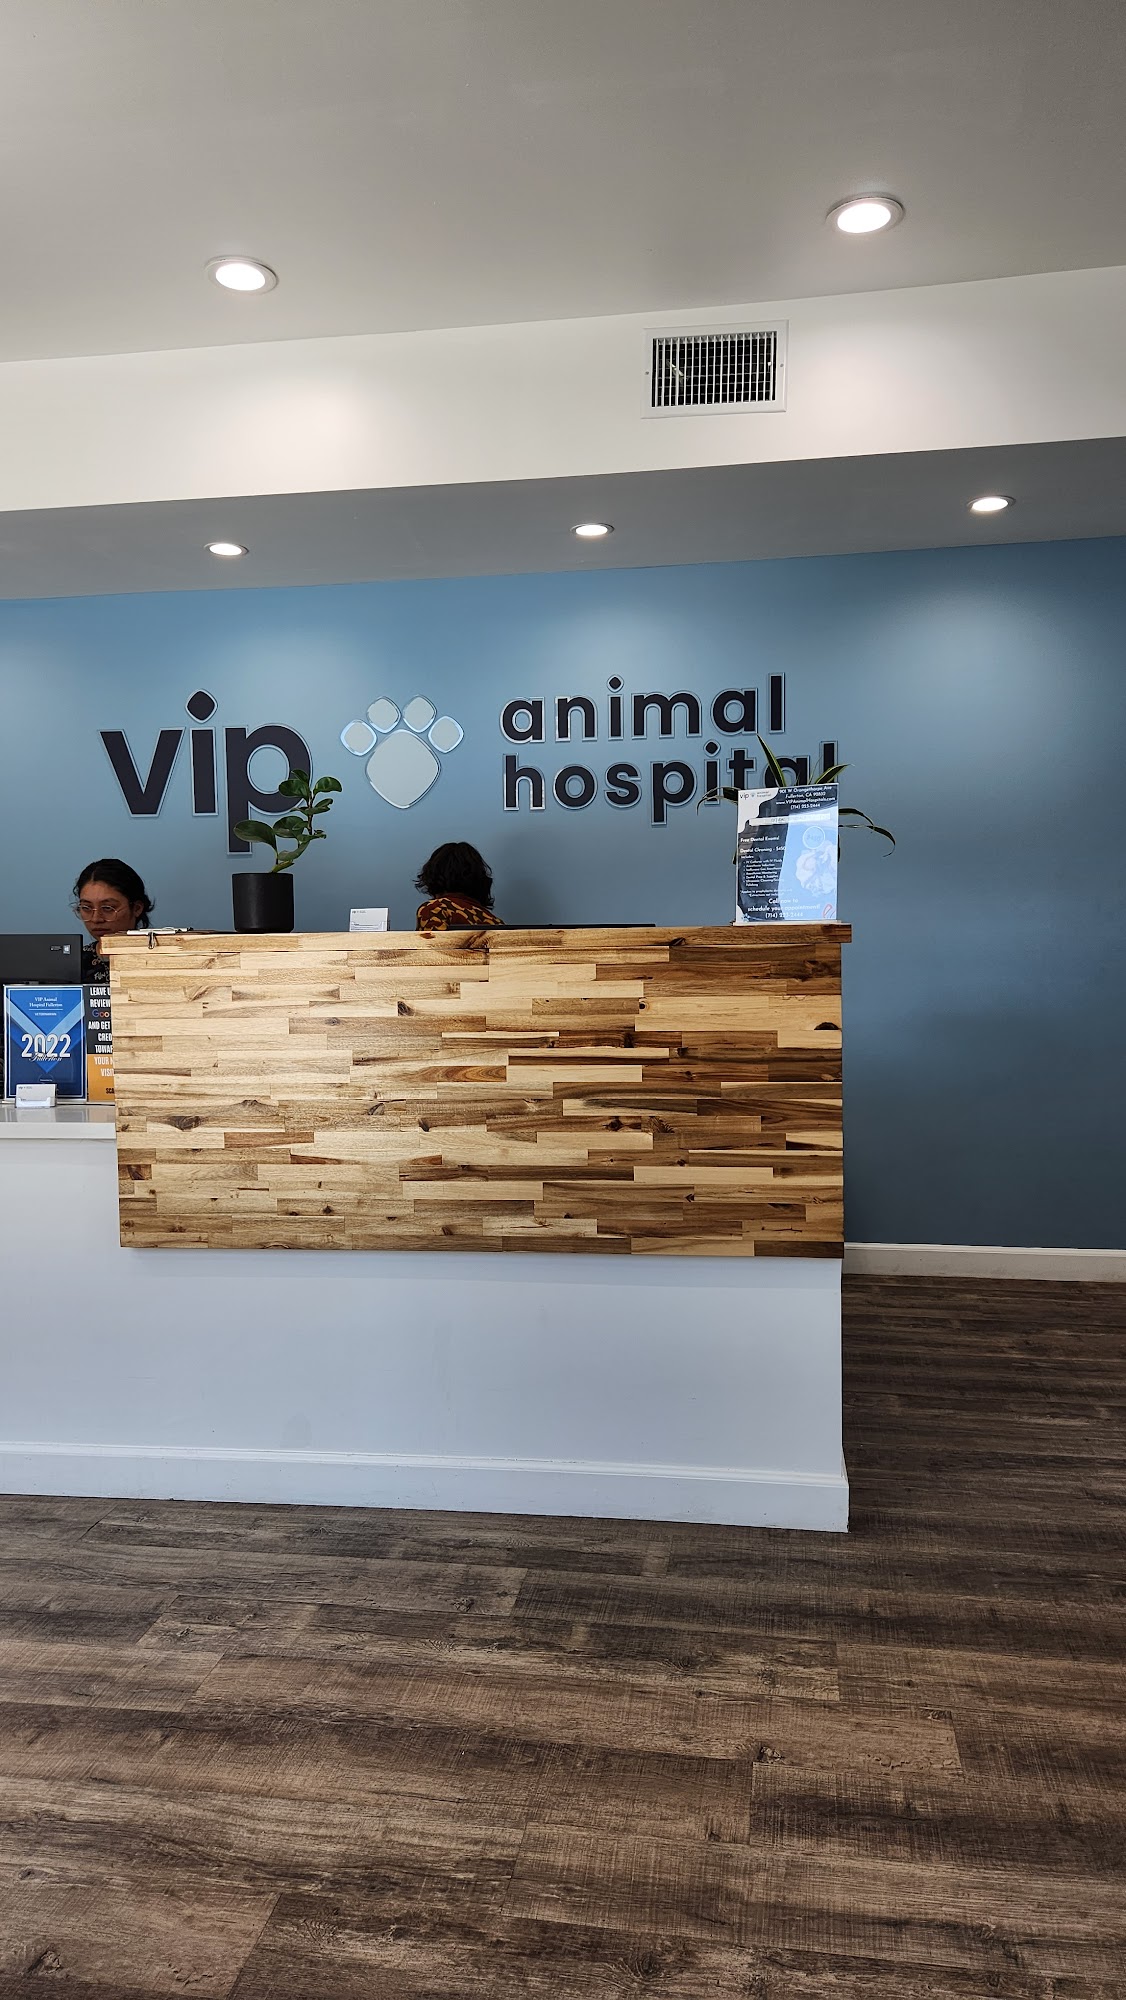 VIP Animal Hospital